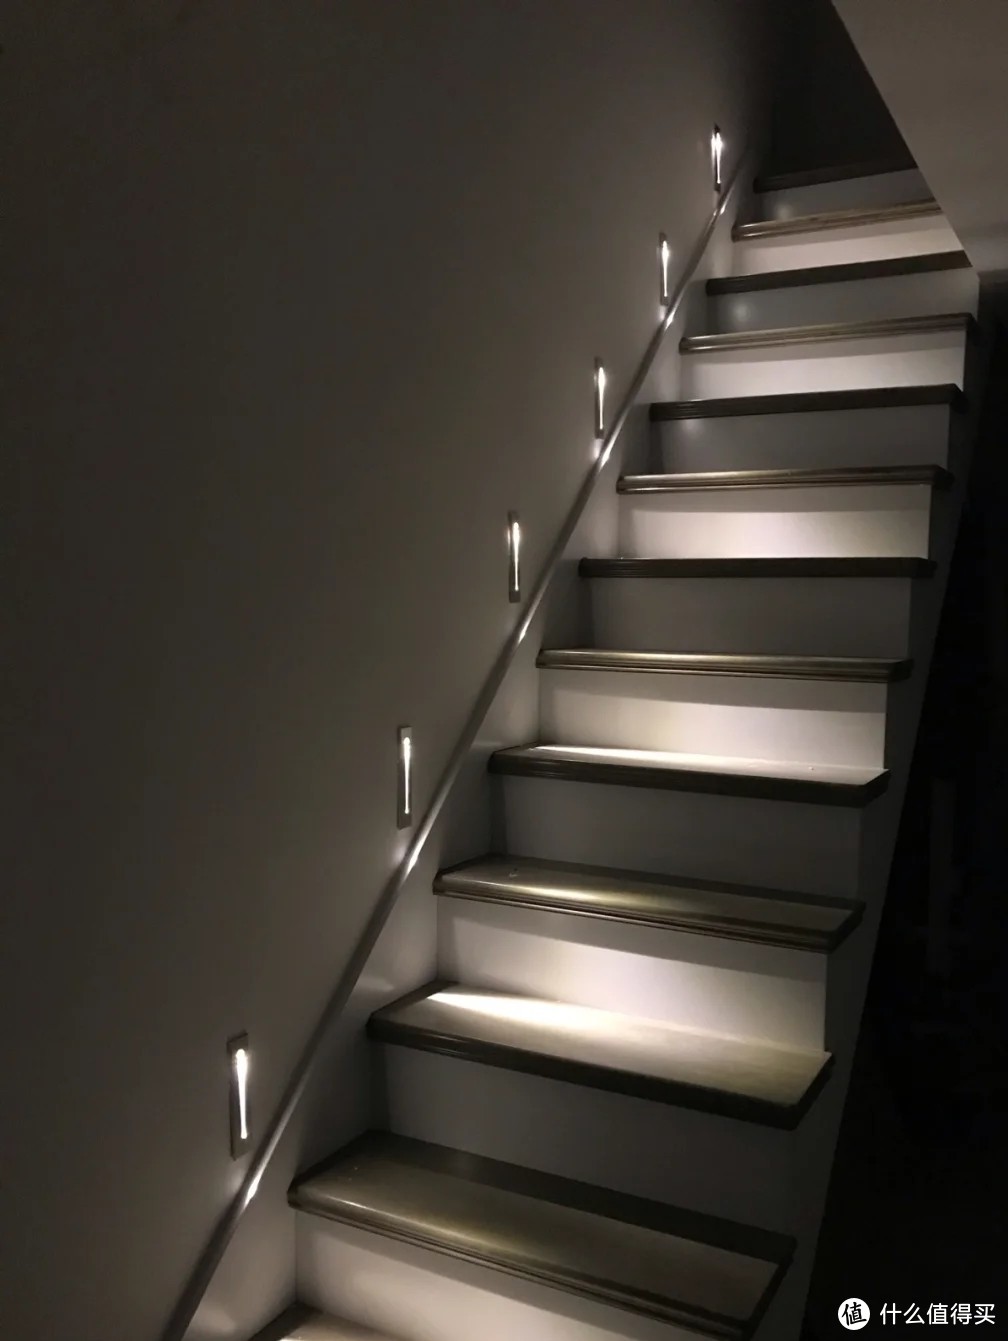  四种楼梯灯光|让上楼变成一件有仪式感的